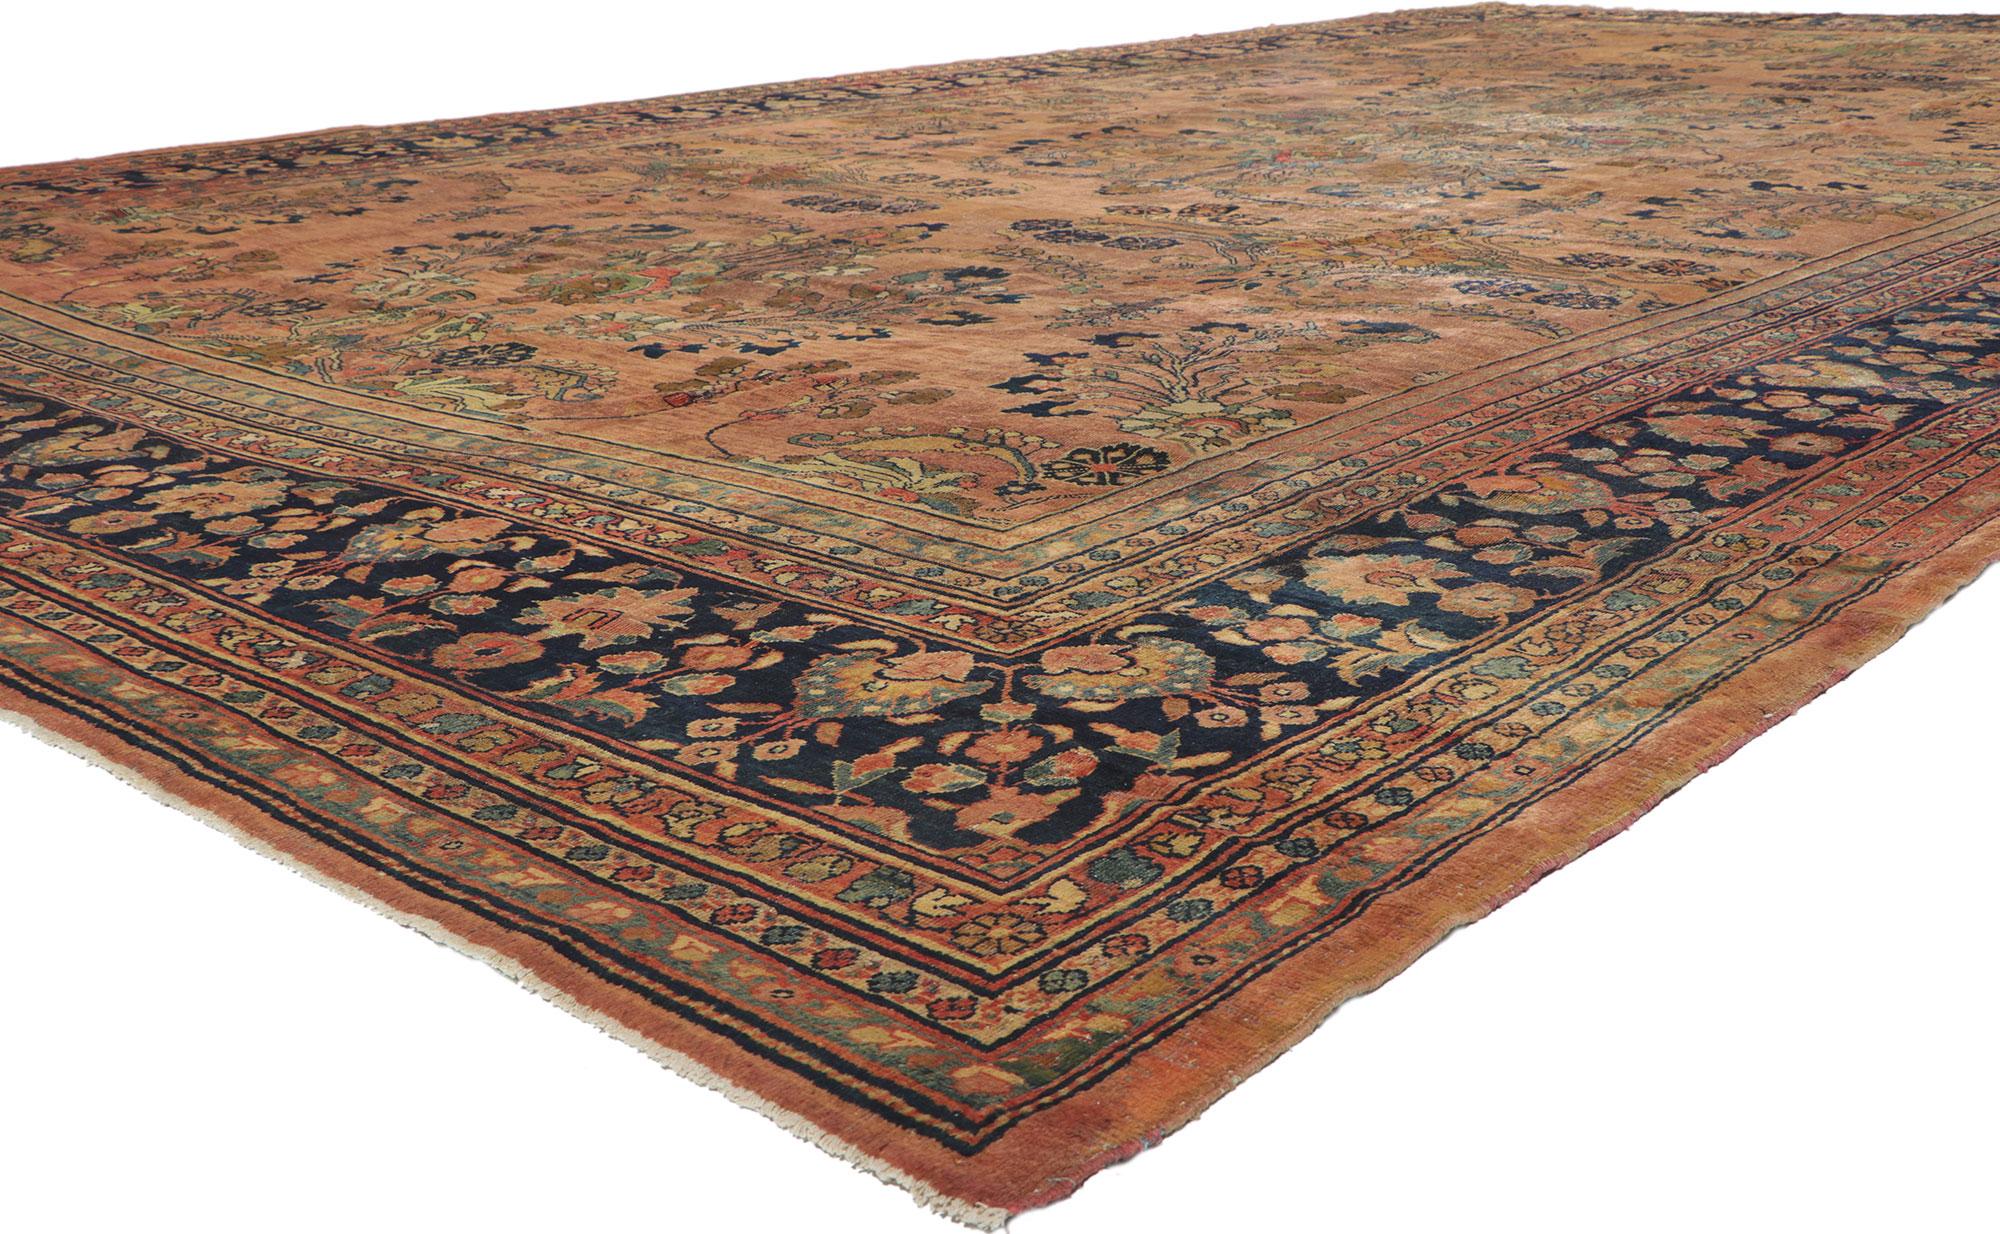 72045 Tapis persan ancien de taille Palace Mahal de style Art Nouveau. Des couleurs brillantes et séduisantes imprègnent ce tapis ancien de taille palace Mahal, un témoignage étonnant du tissage persan traditionnel. Ce tapis persan ancien en laine